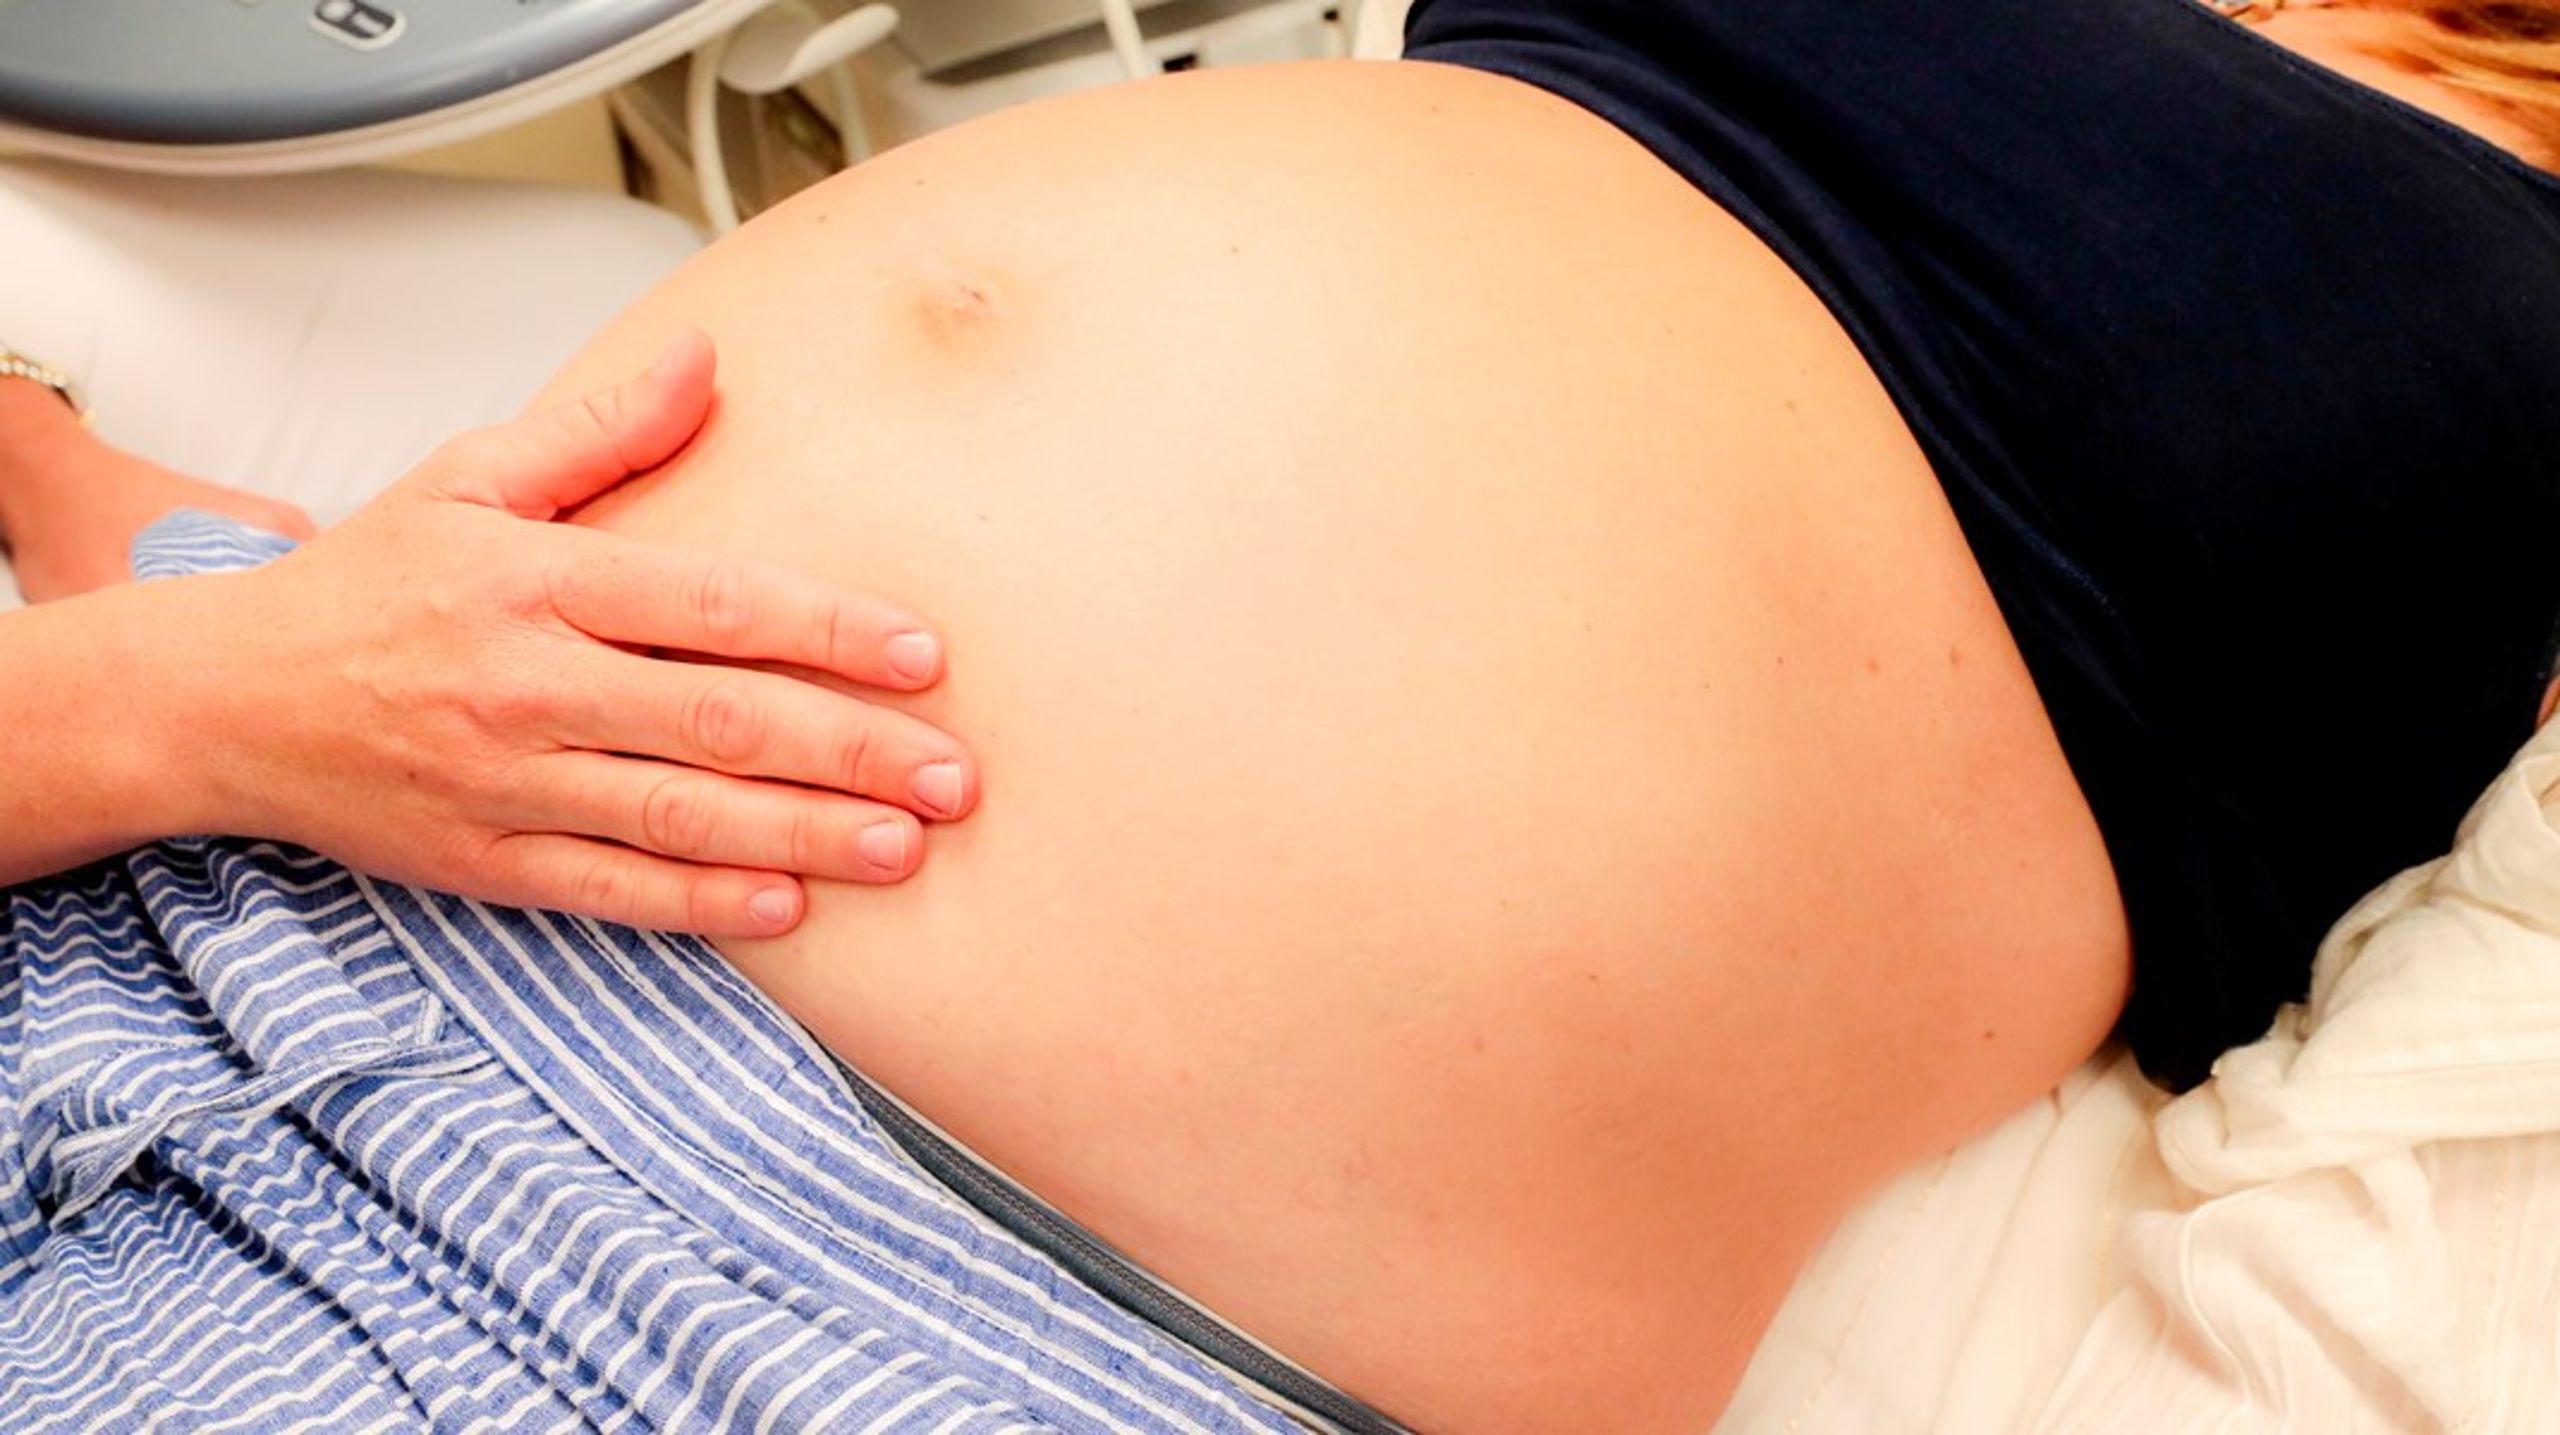 Gravide som bor minst 1,5 time unna der de skal føde, har krav på å bli undersøkt av jordmor eller lege når de tror fødselen er i gang. Da skal det også vurderes om det er behov for ambulanse, og om jordmor eller lege skal være med på veien til sykehuset.